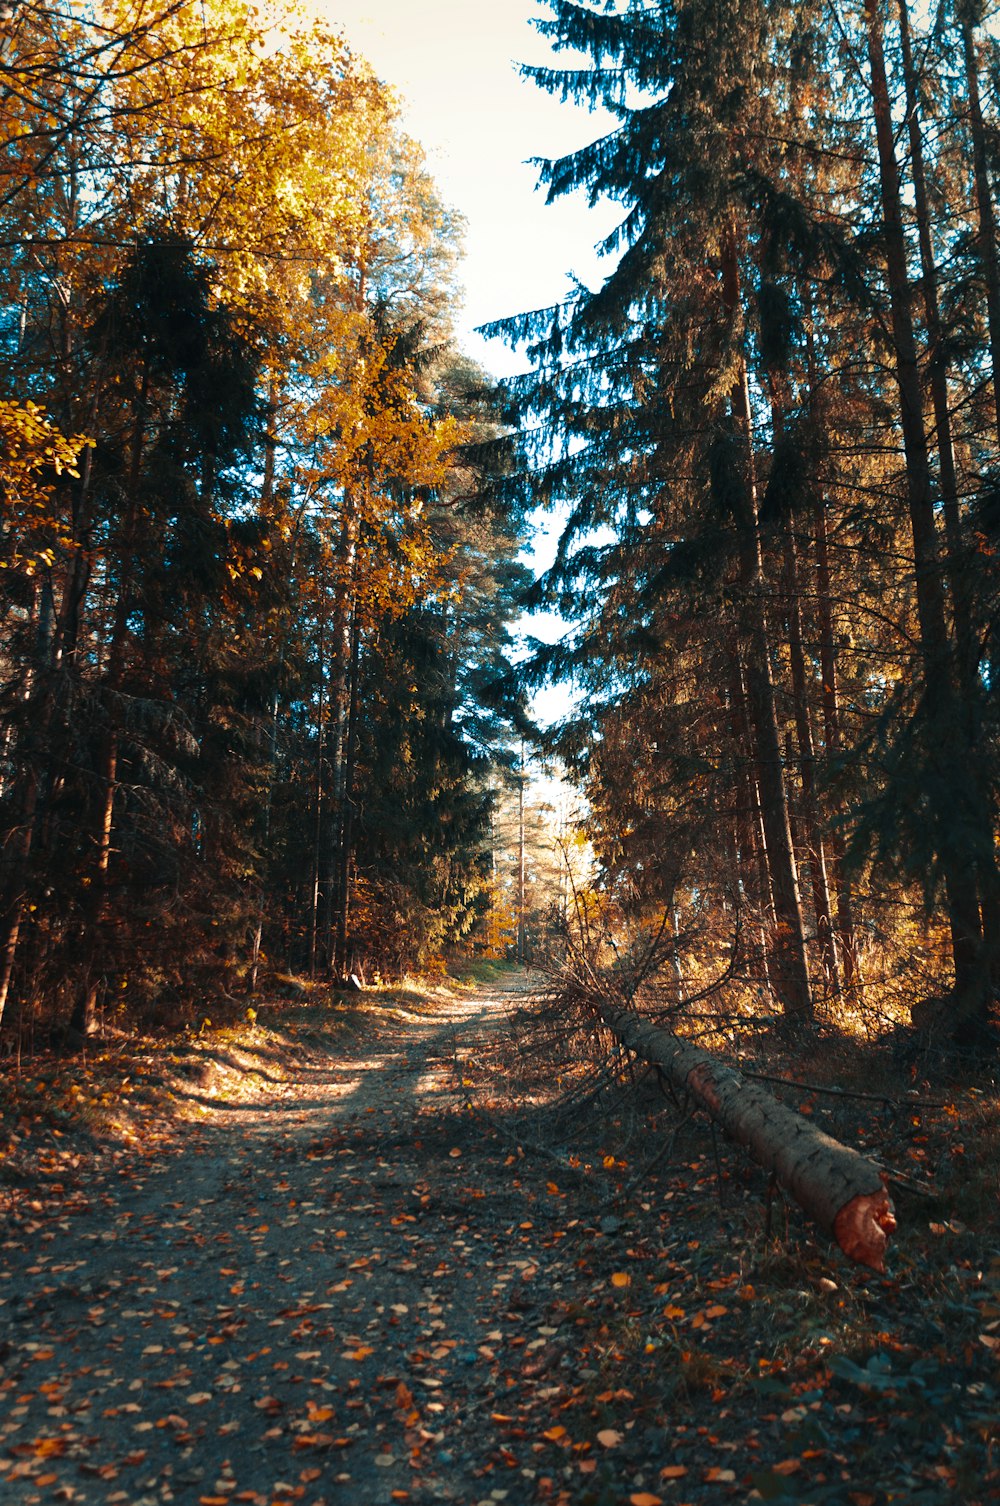 eine unbefestigte Straße, umgeben von Bäumen und abgefallenen Blättern